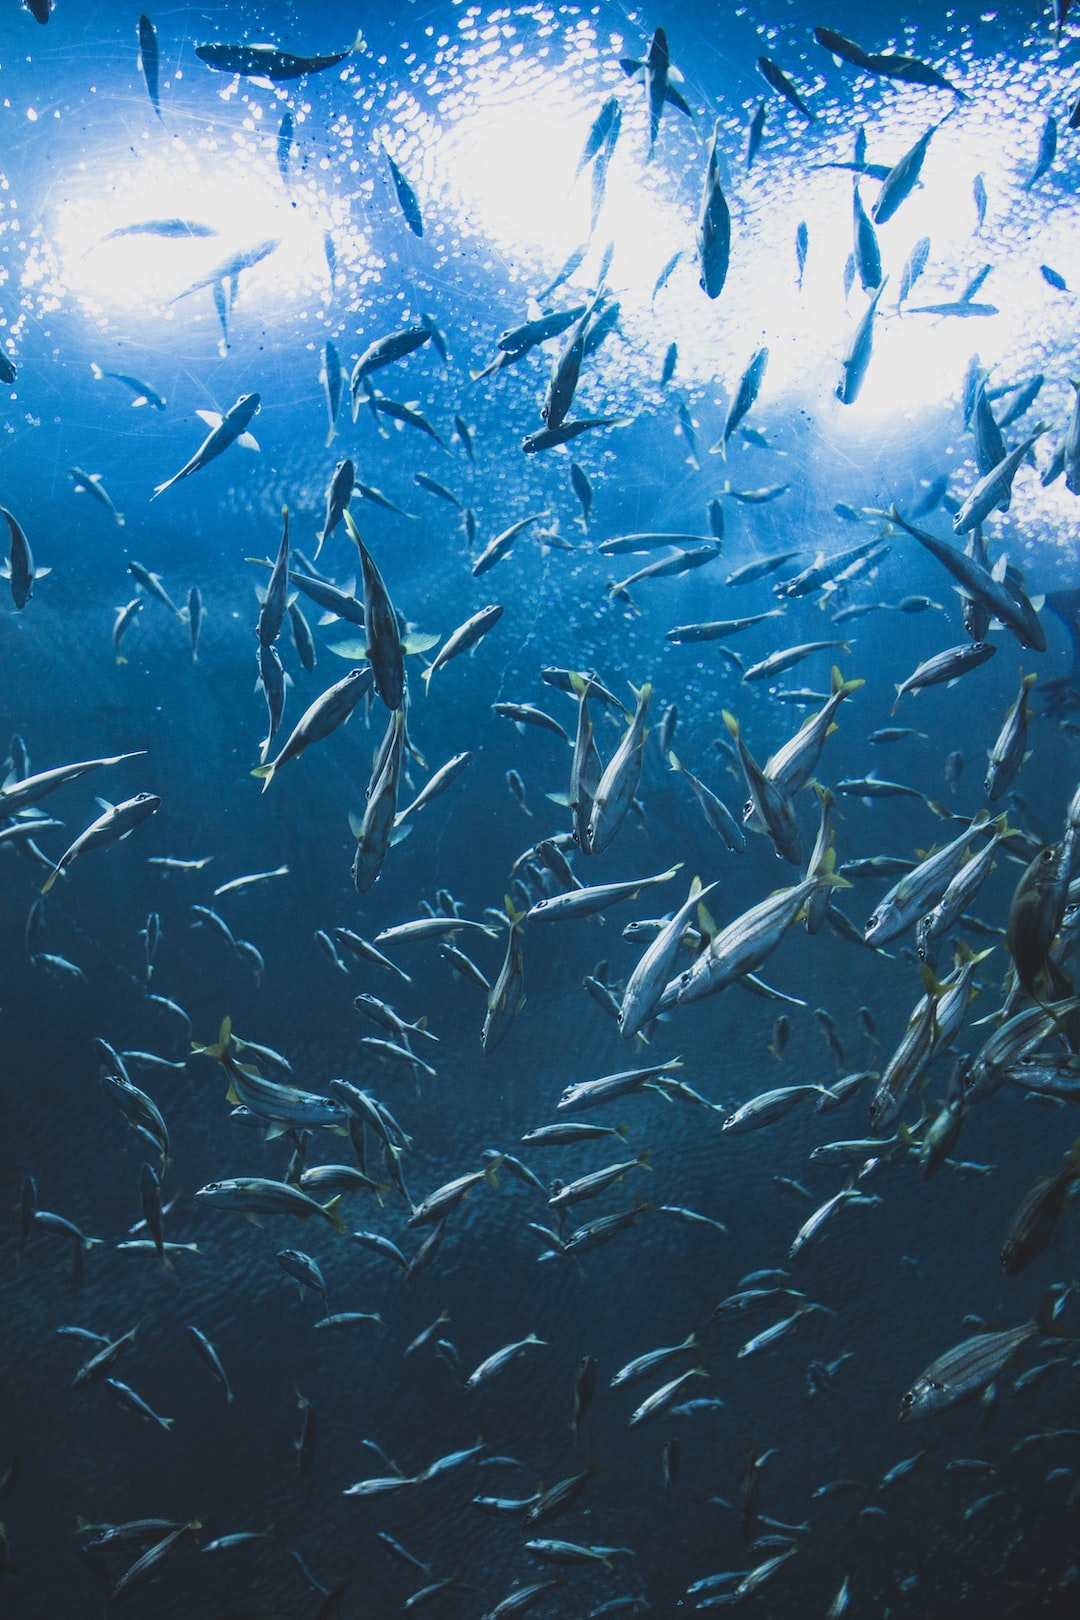 19 wichtige Fragen zu Welche Tiere Machen Das Aquarium Sauber?